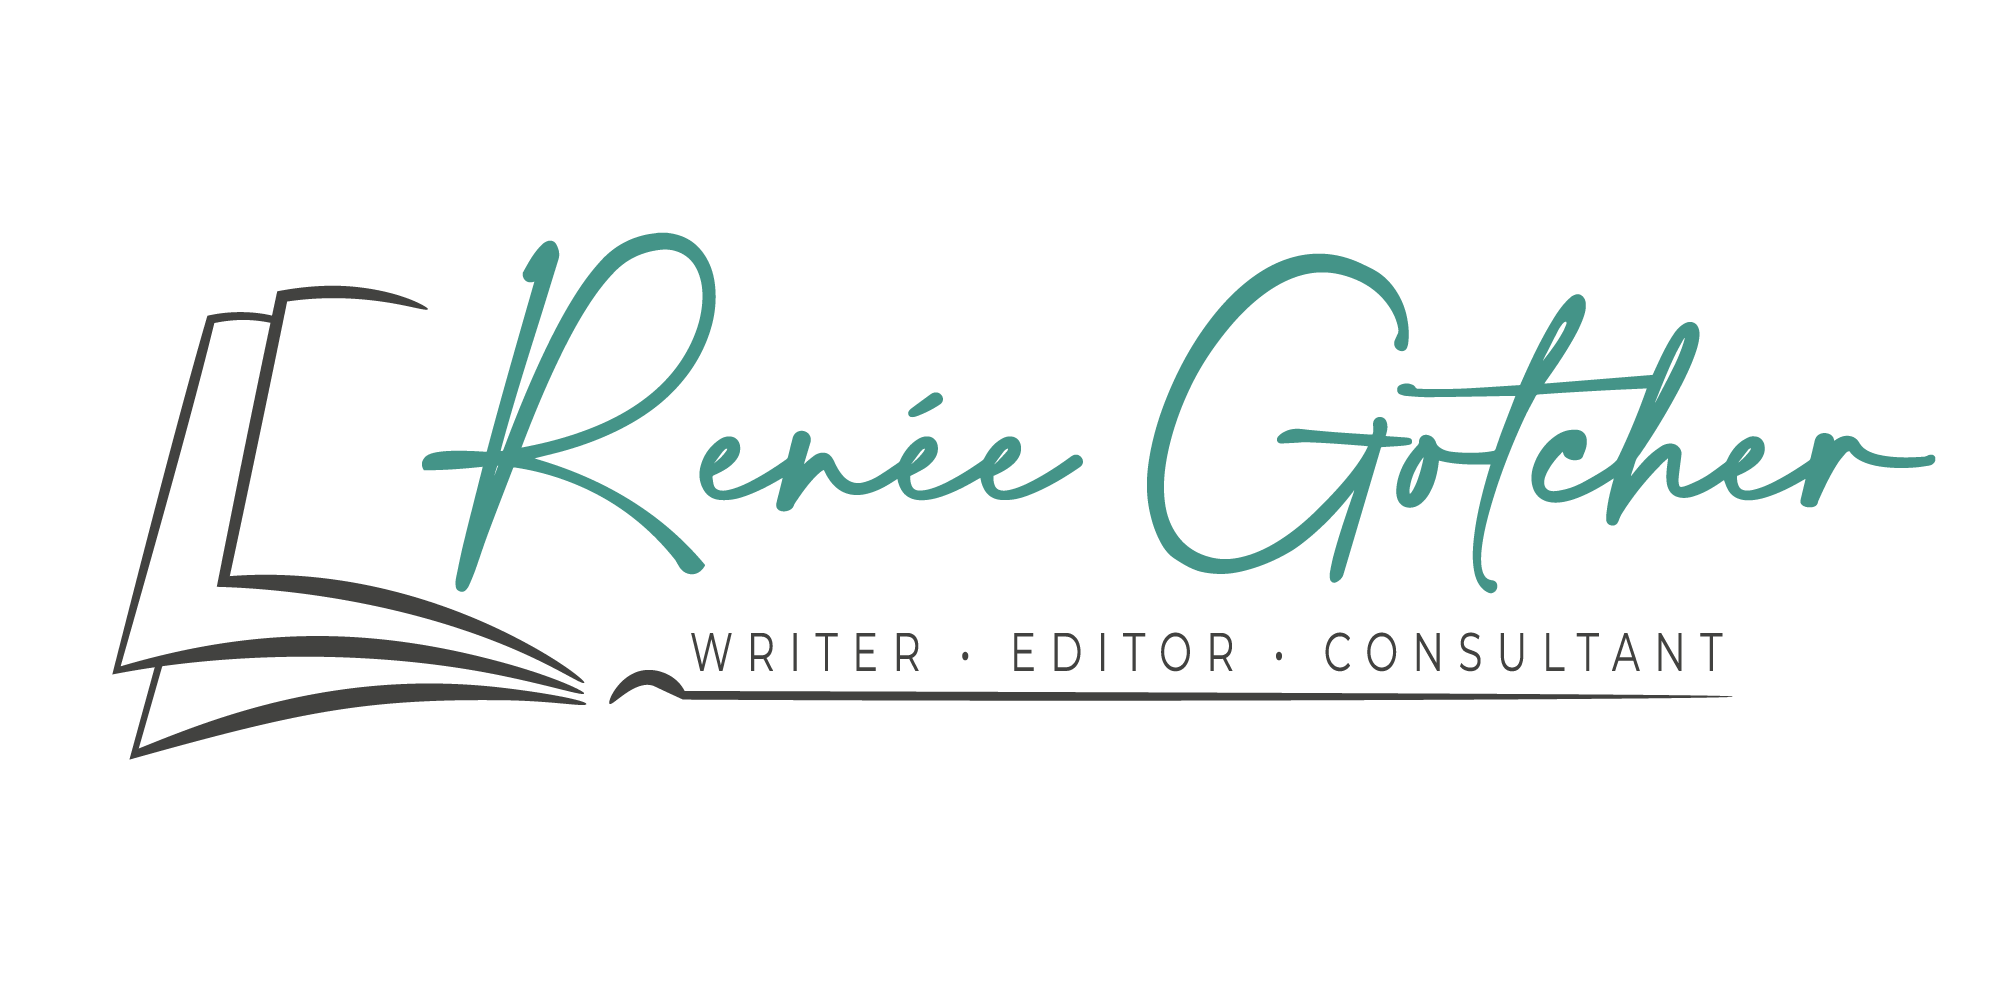 Renée Gotcher - Writer - Editor - Consultant